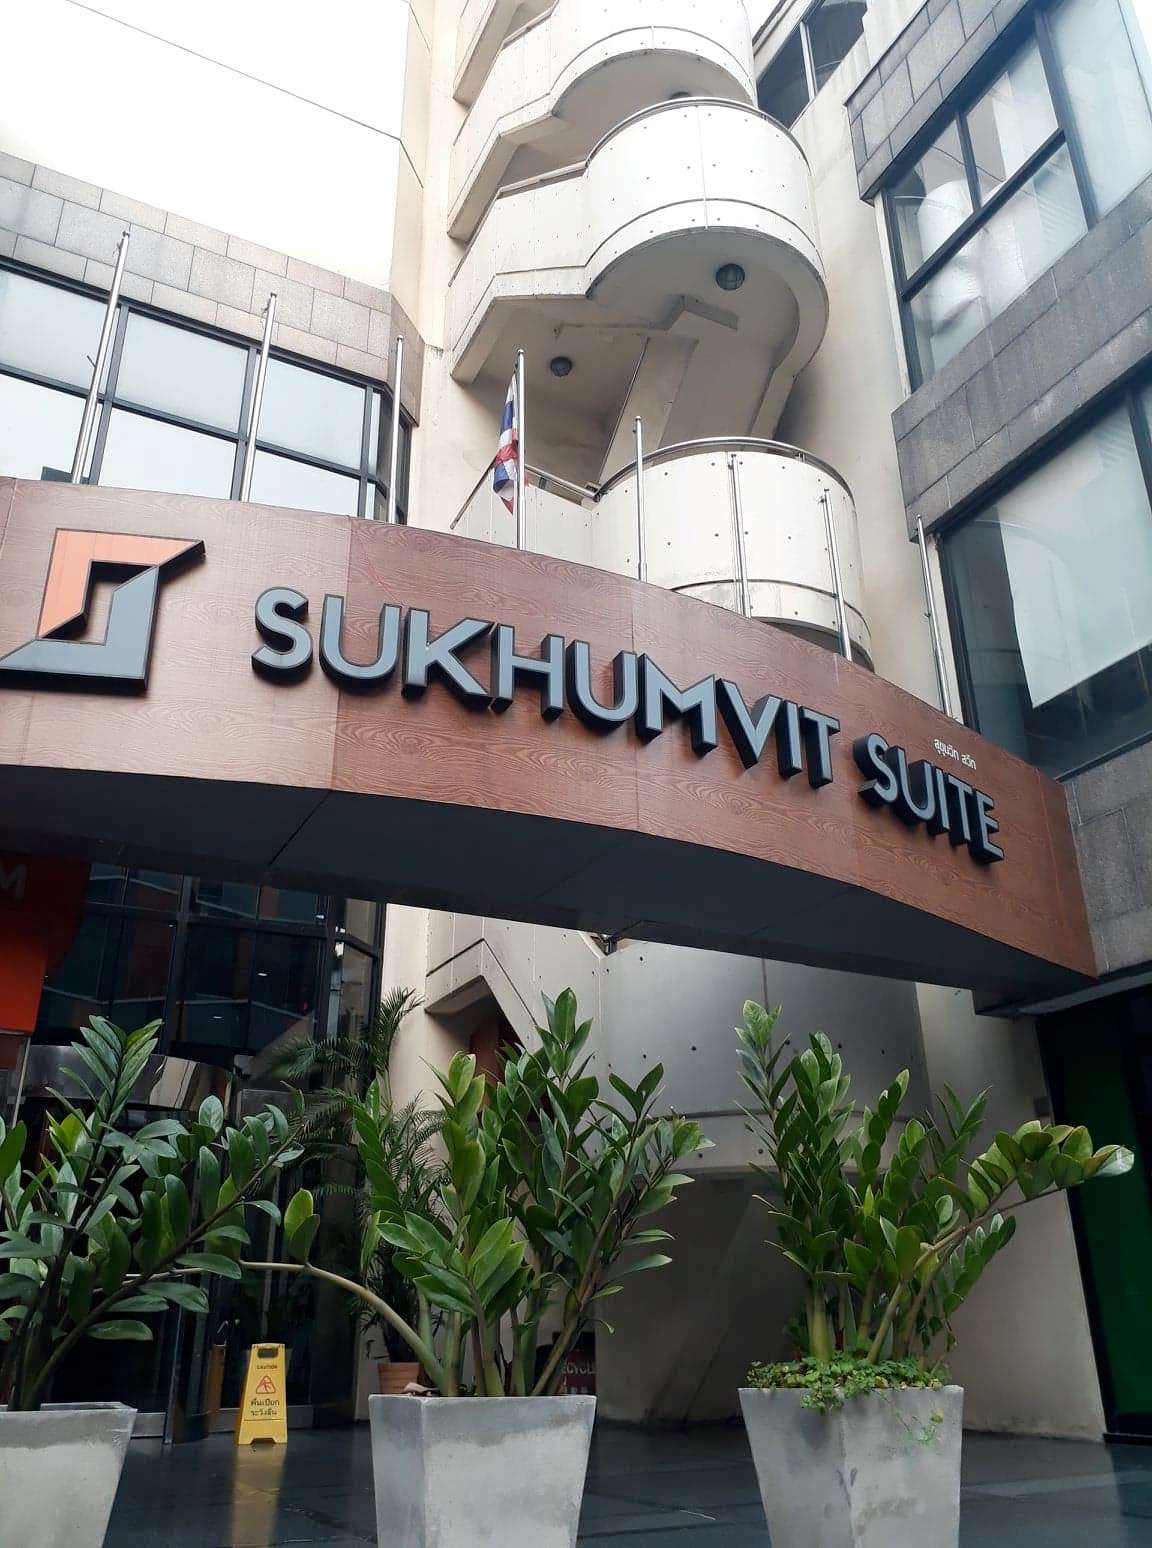 Office for rent Sukhumvit Suite Building : 116.8 Sqm. (OCCUPIED)